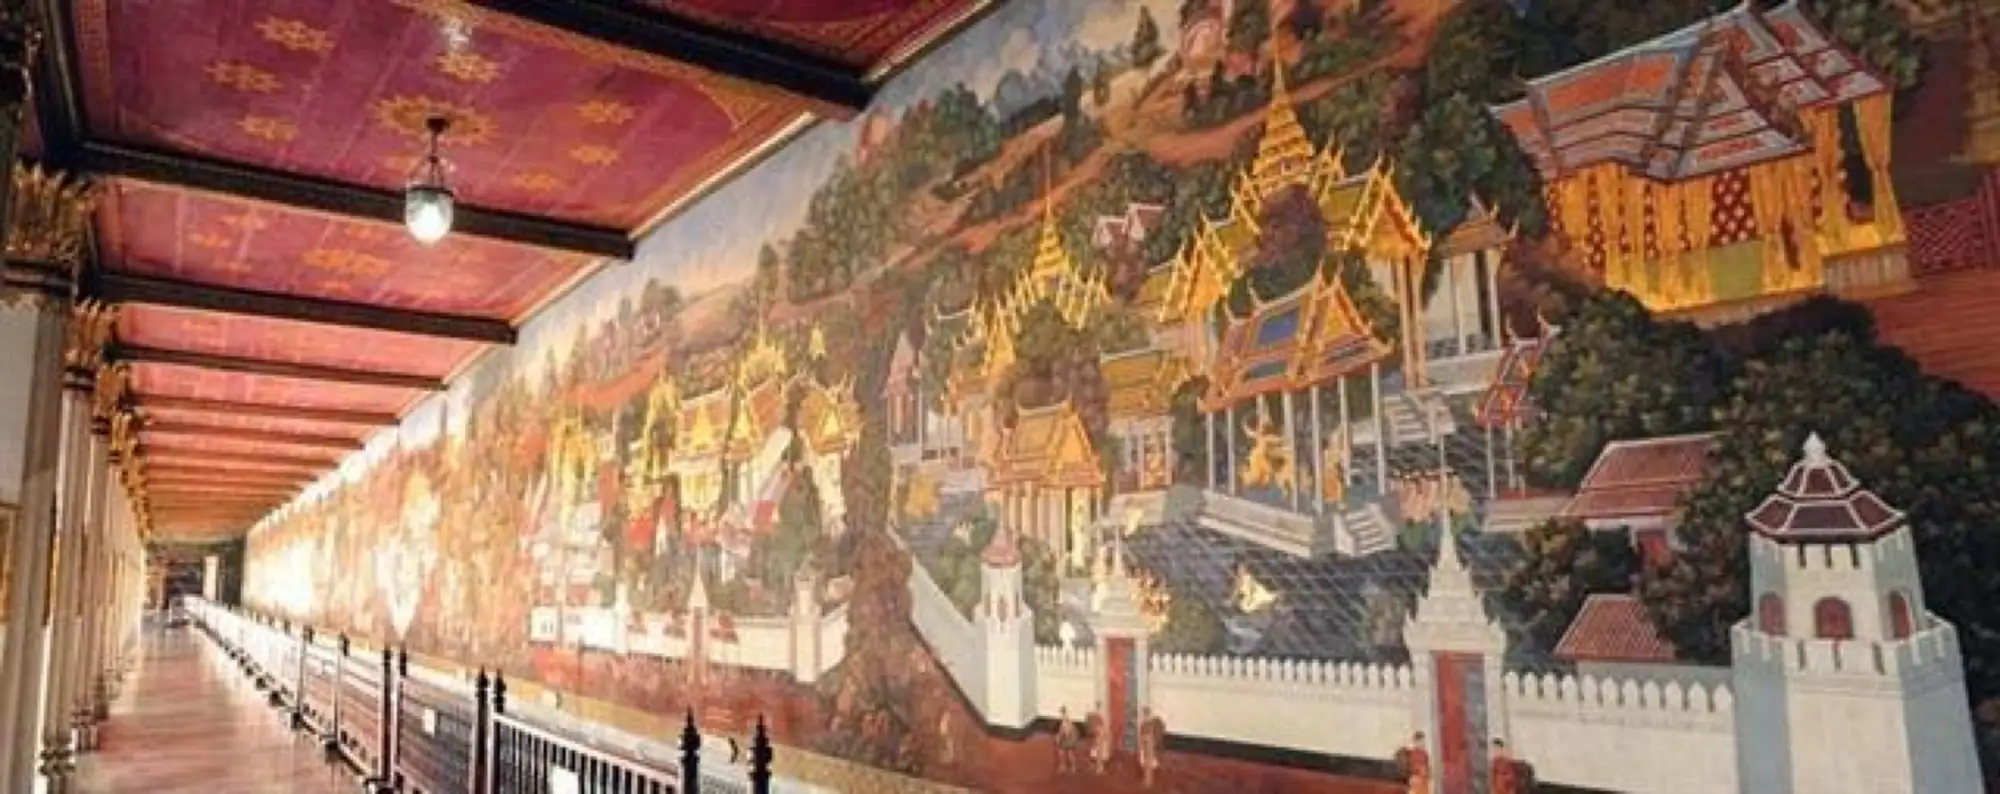 來到泰國玉佛寺肯定要欣賞世界上最長的壁畫(圖片Tamroitawan)